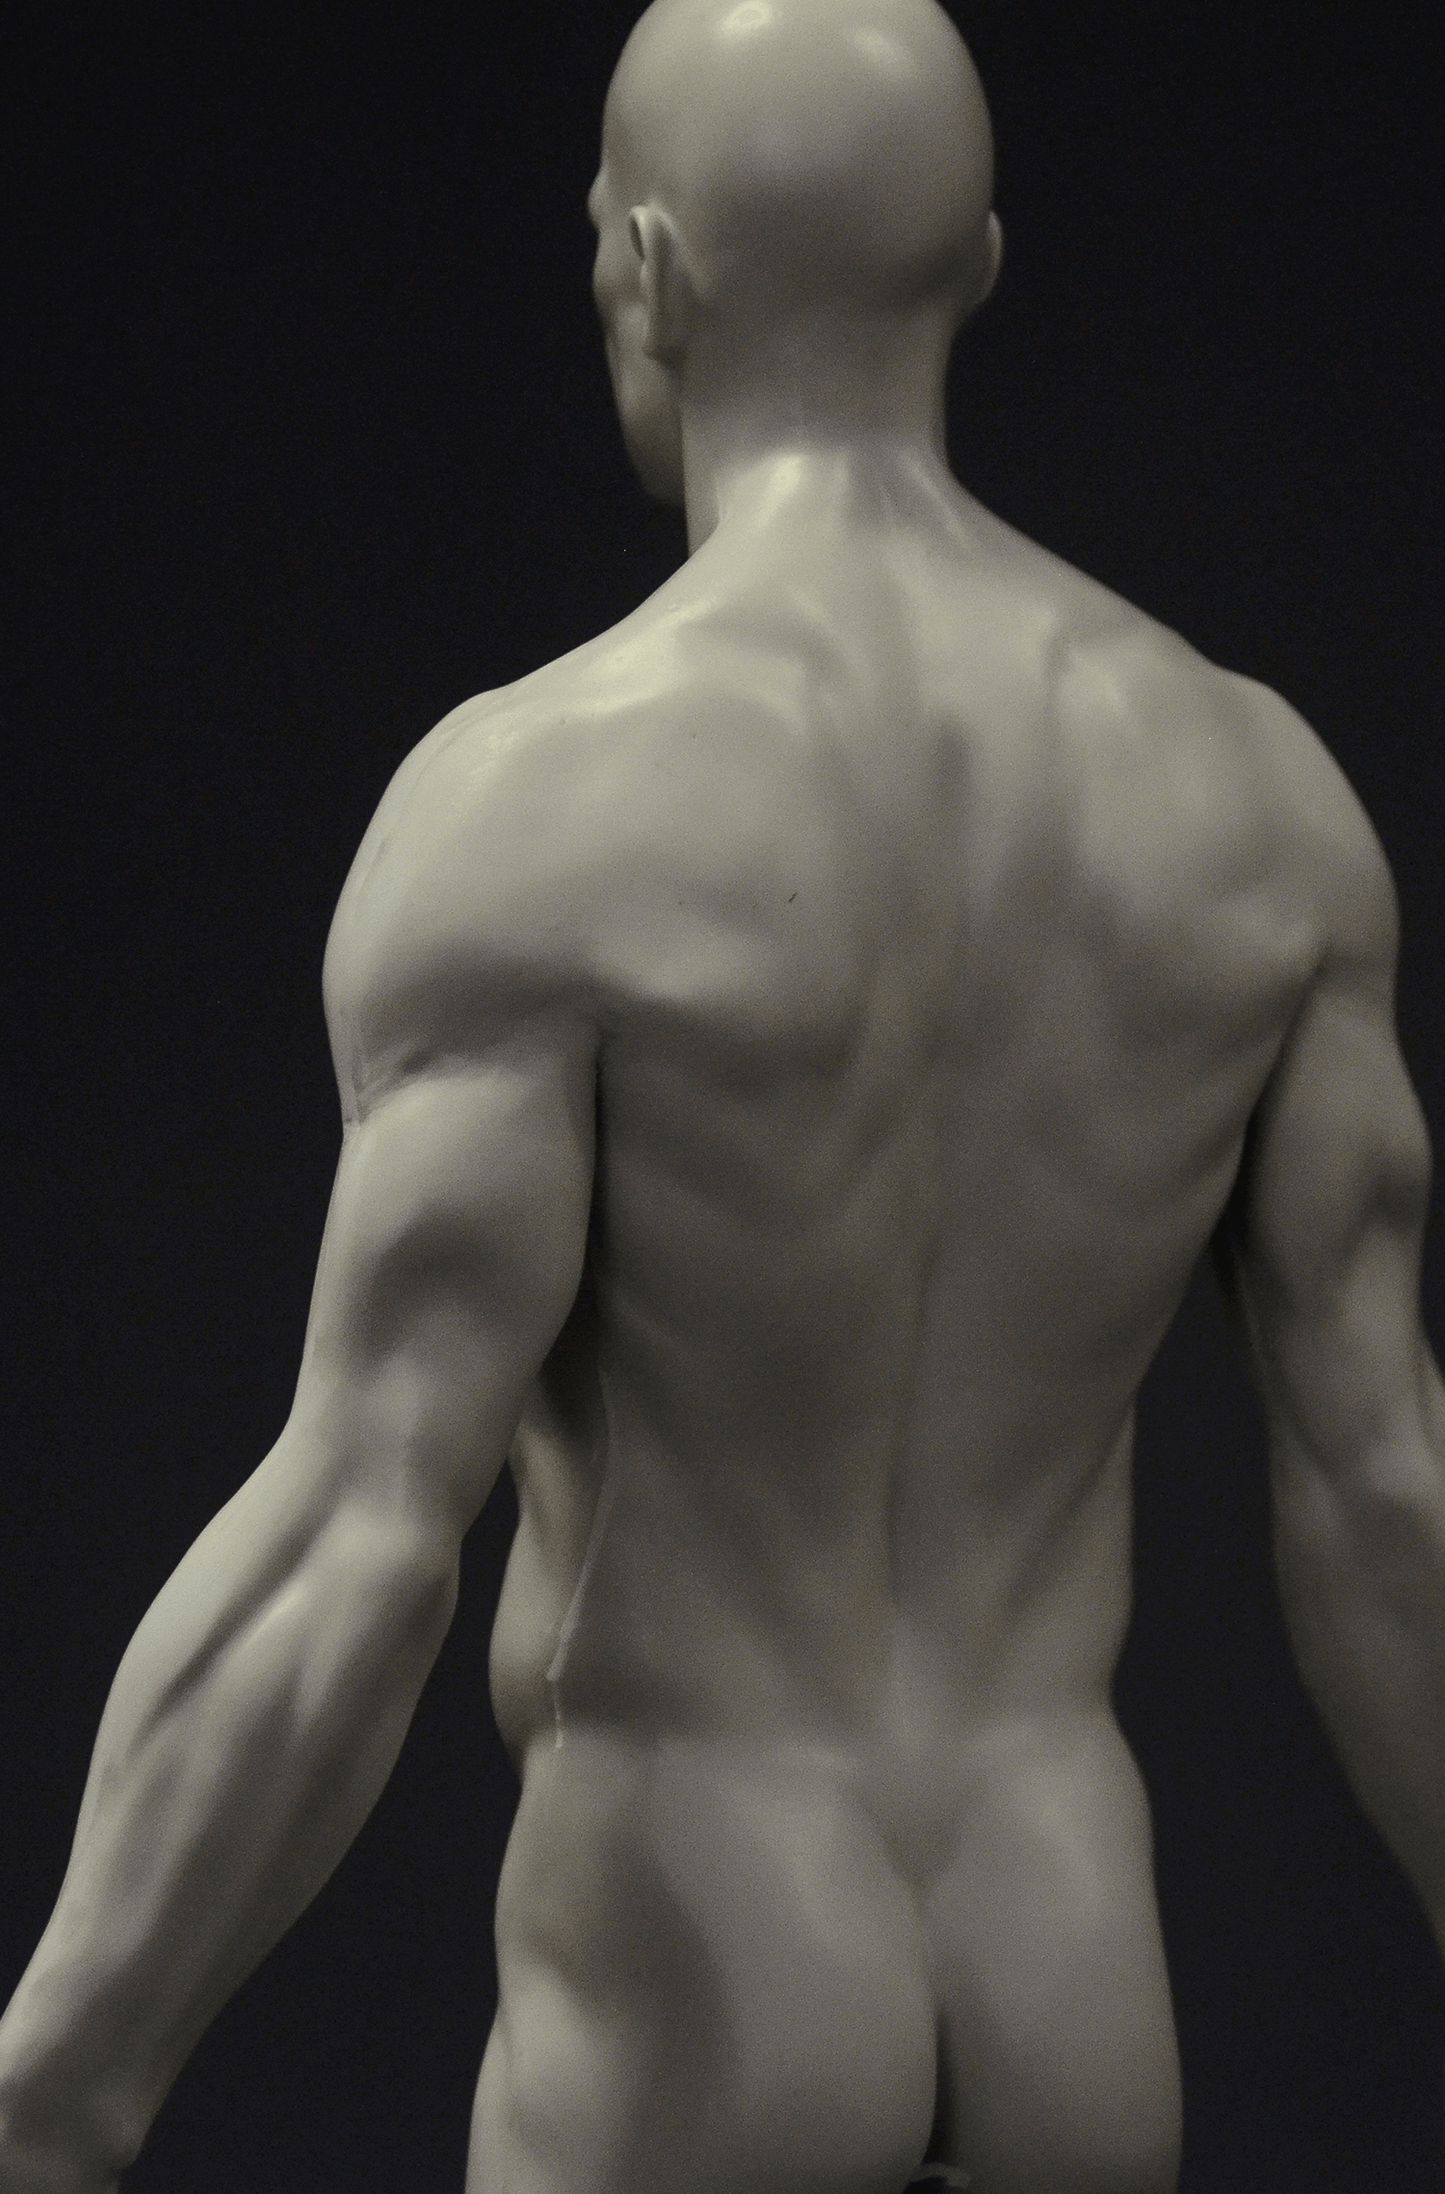 3dtotal Anatomy: male full skin figure